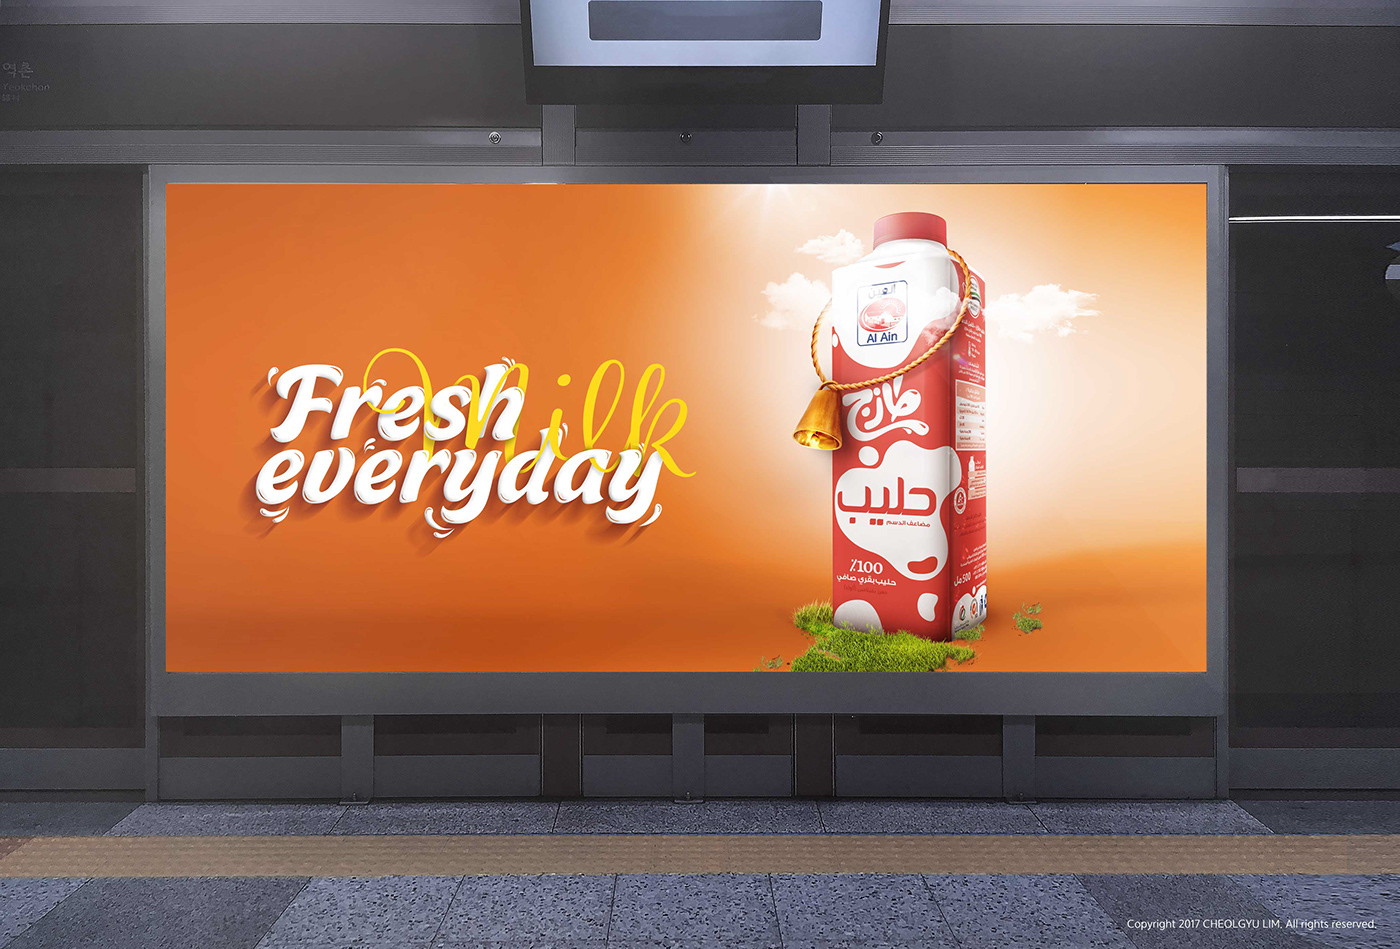 fresh milk Dairy cow drink UAE packageing TetraPak